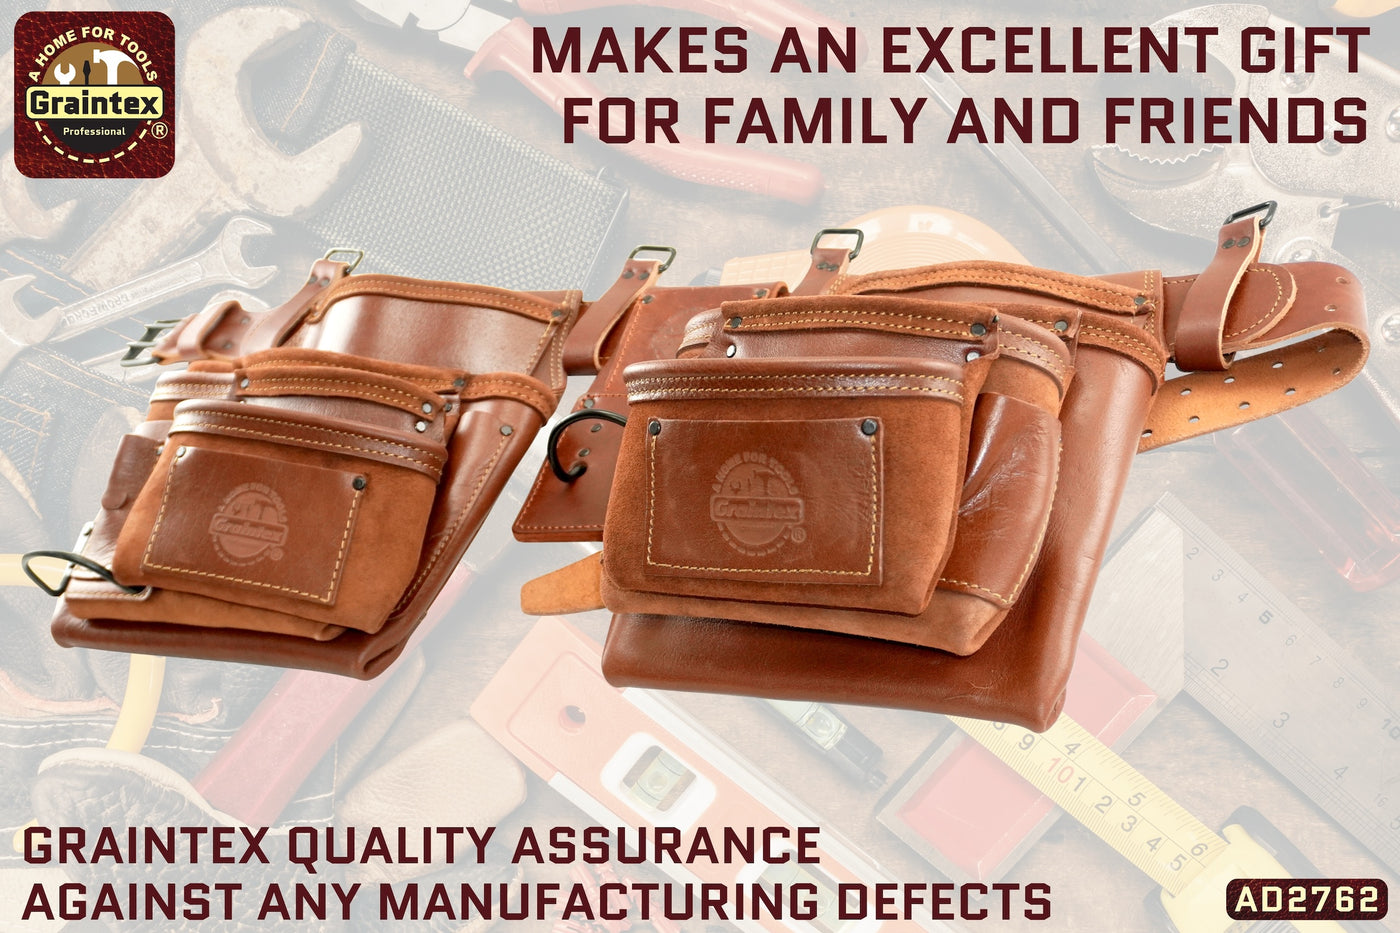 AD2762 :: 4 Piece 17 Pocket Framer's Tool Belt Combo Set Ambassador Series Chestnut Brown Color Top Grain Leather